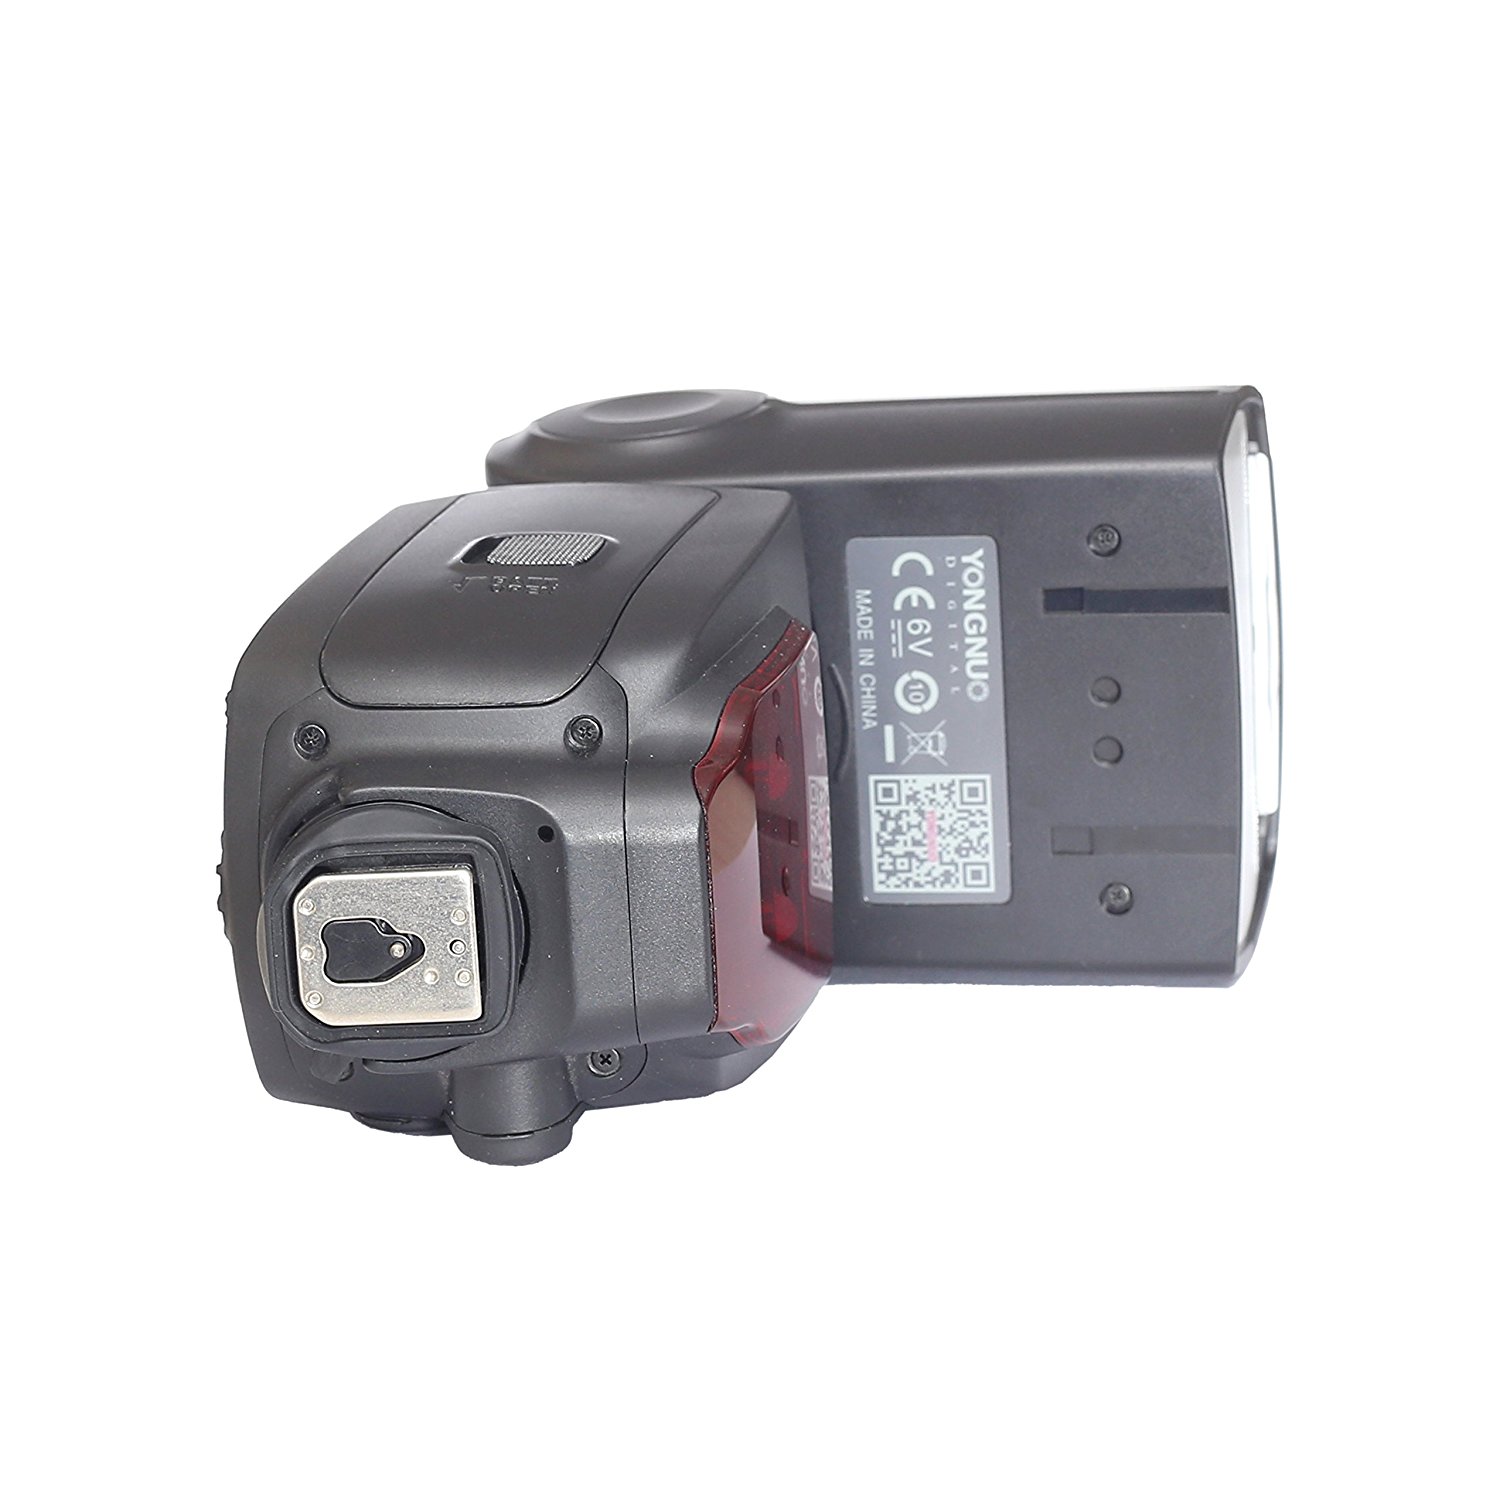 Yongnuo-YN660-Wireless-GN66-24G-Flash-Speedlite-for-Canon-Nikon-Pentax-Cameras-1233170